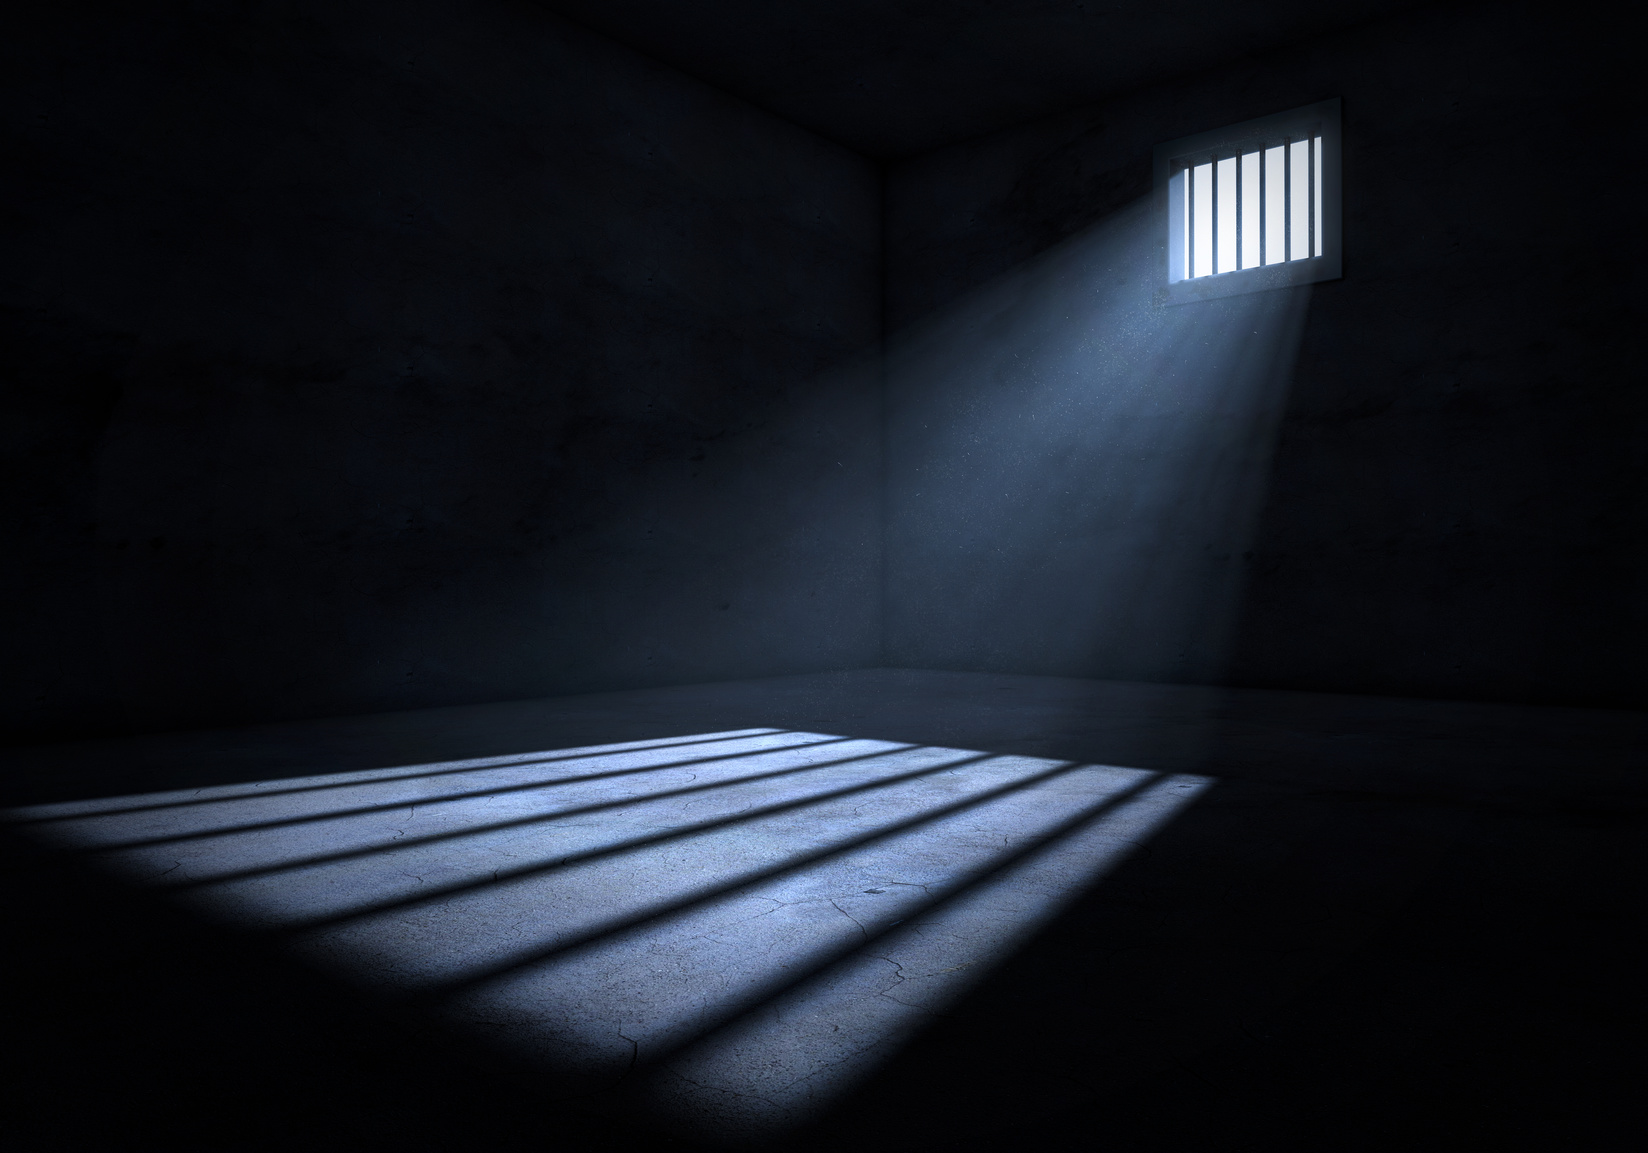 Totgeburt nach Vergewaltigung - Unfassbar: Opfer soll 30 Jahre ins Gefängnis 